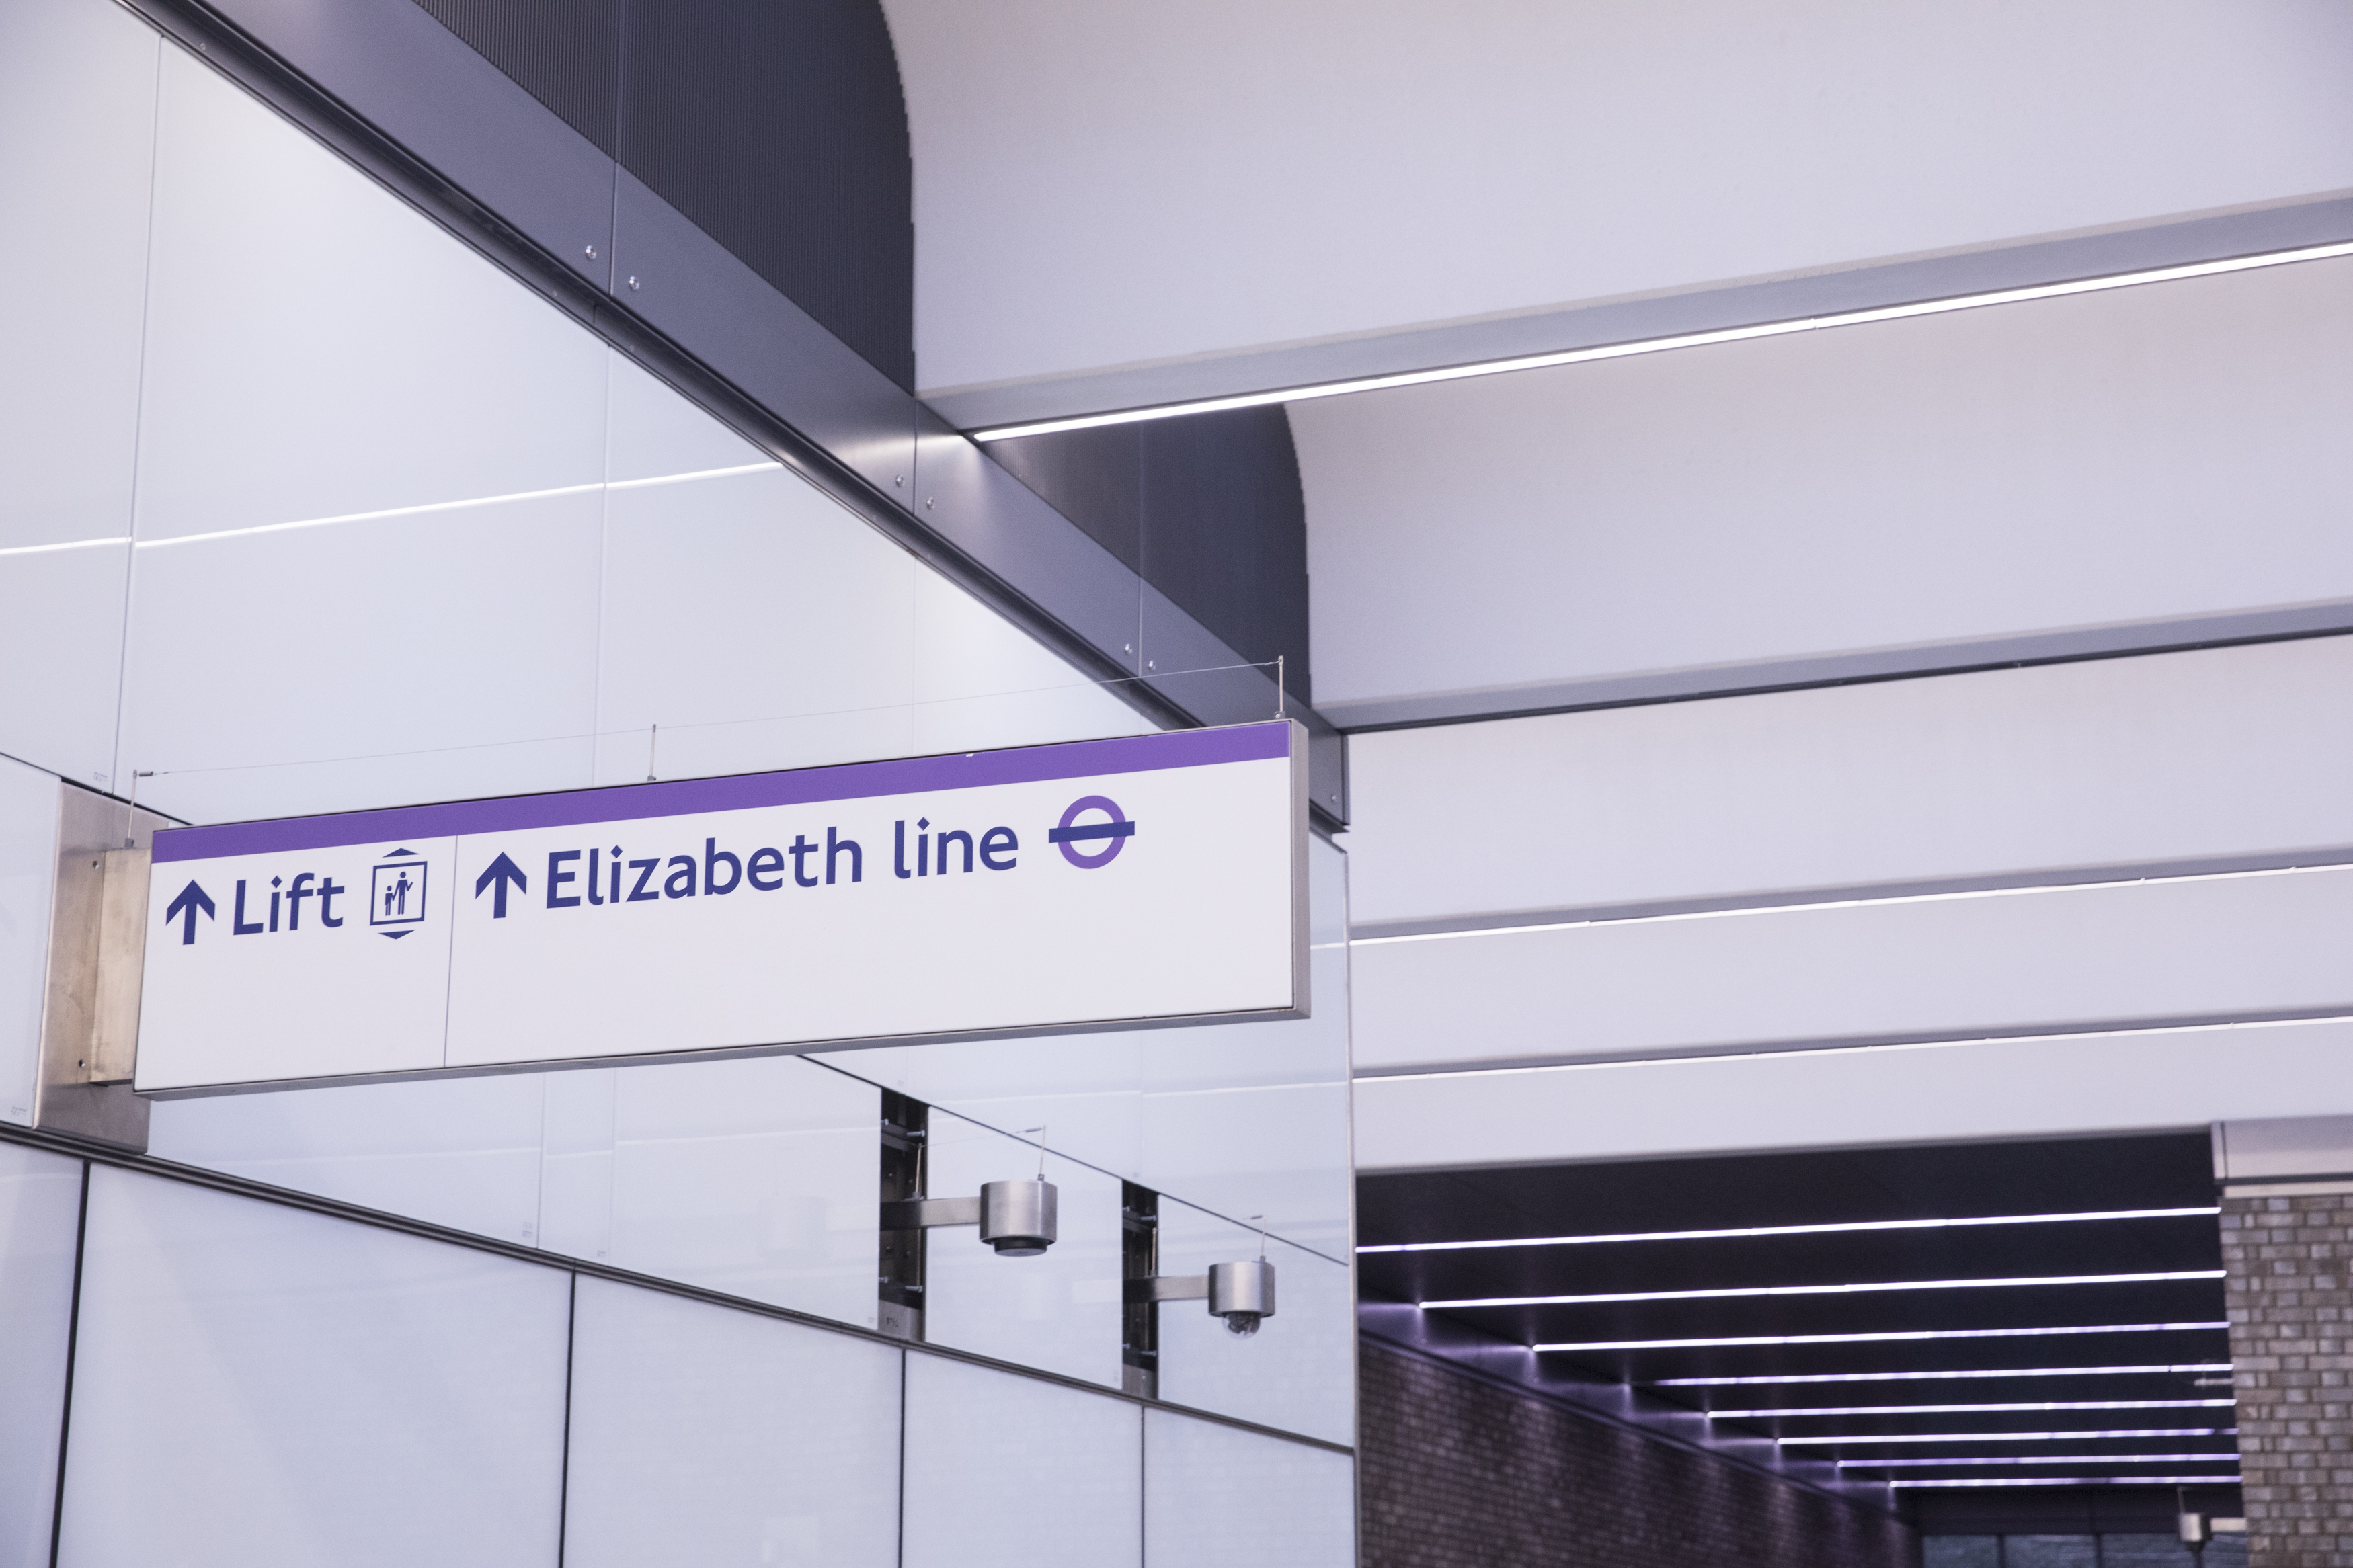 An Elizabeth line sign